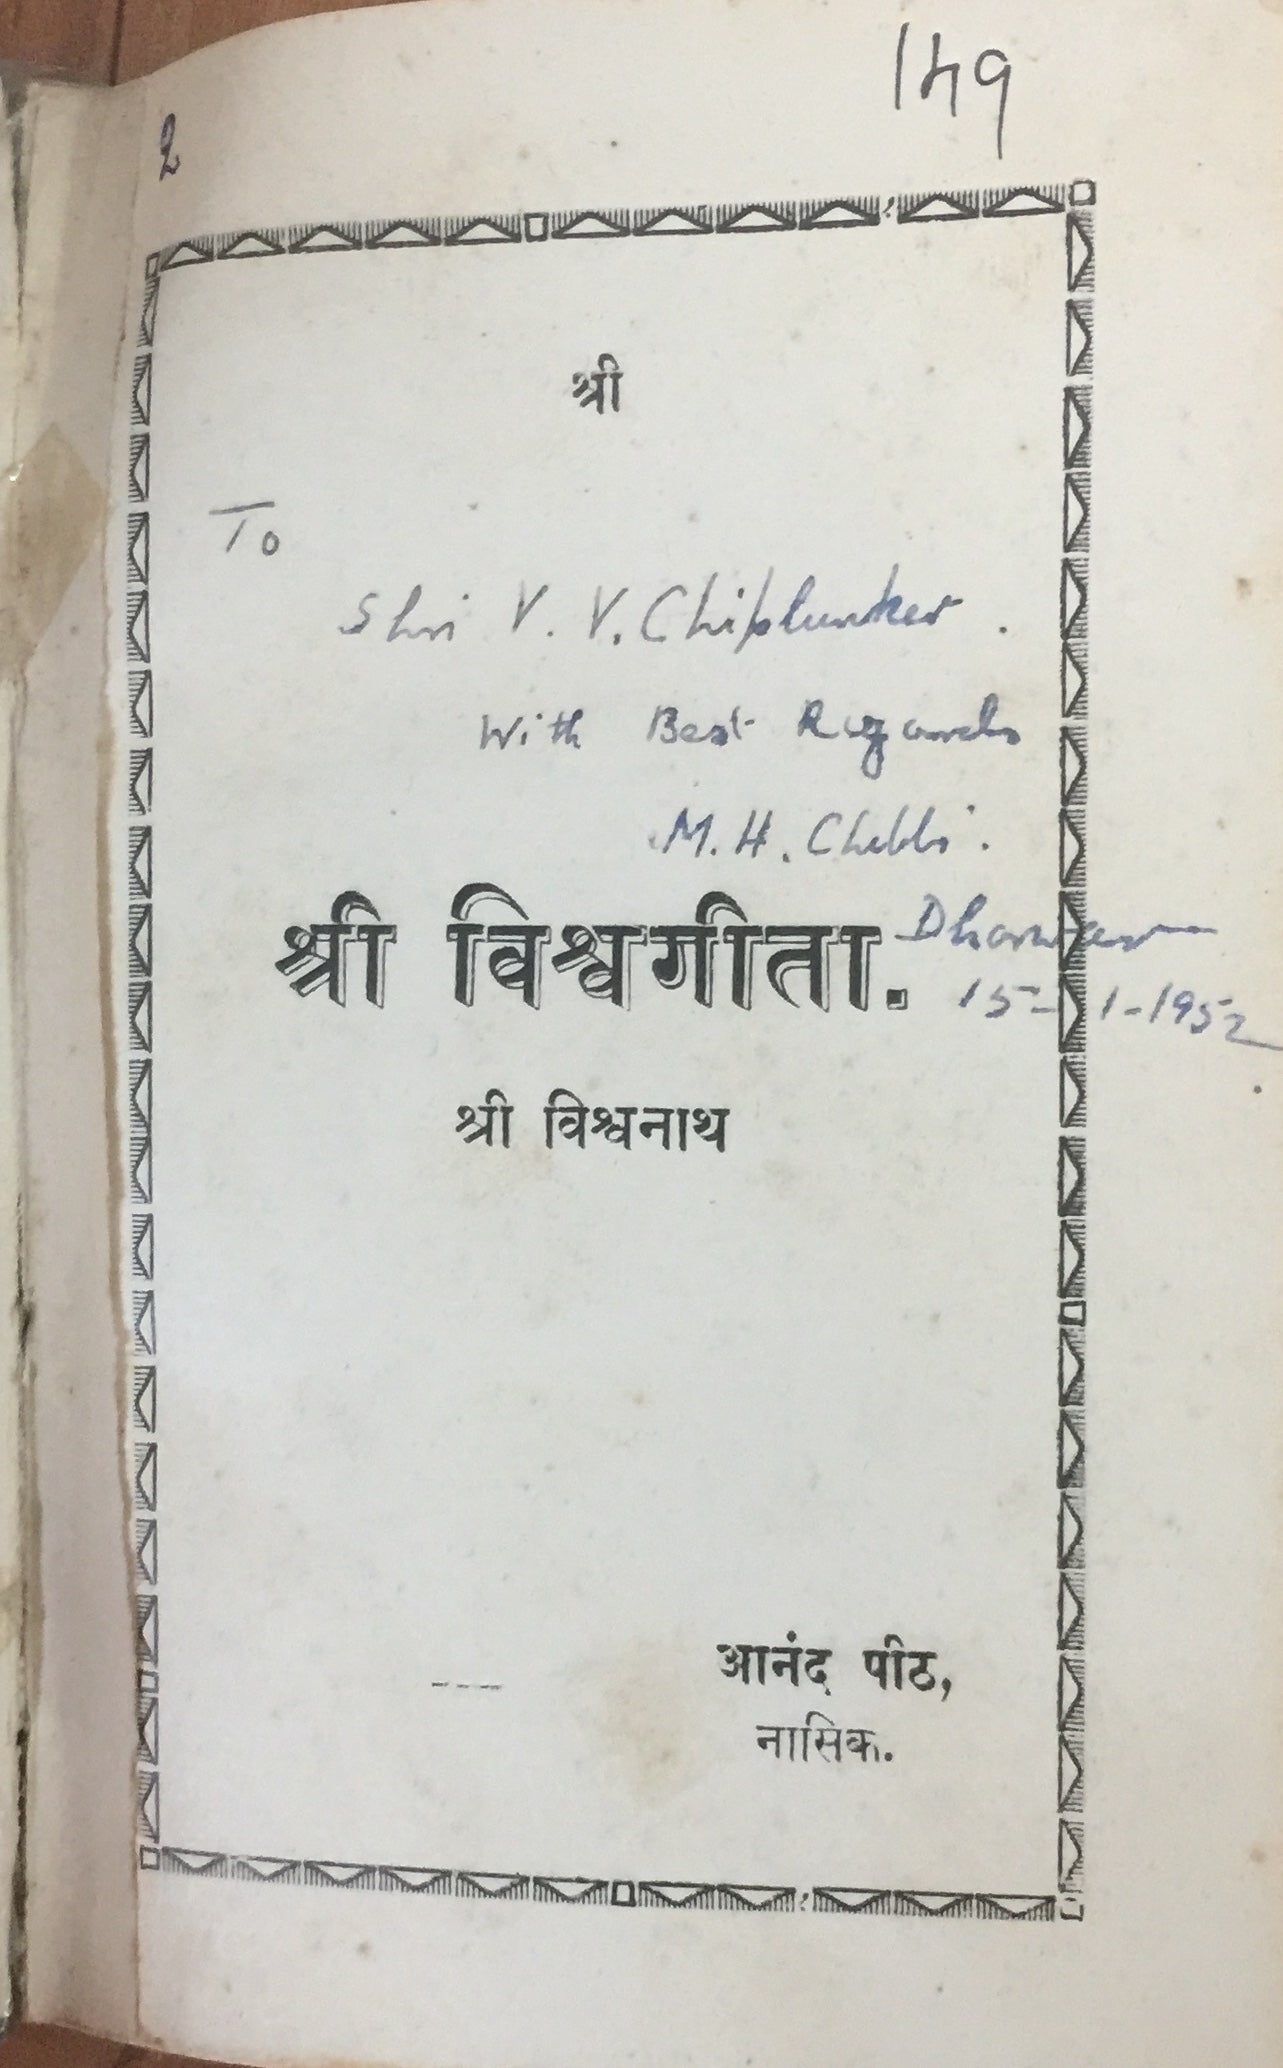 Shree Vishwageeta by Shree Vishwanath (1938)